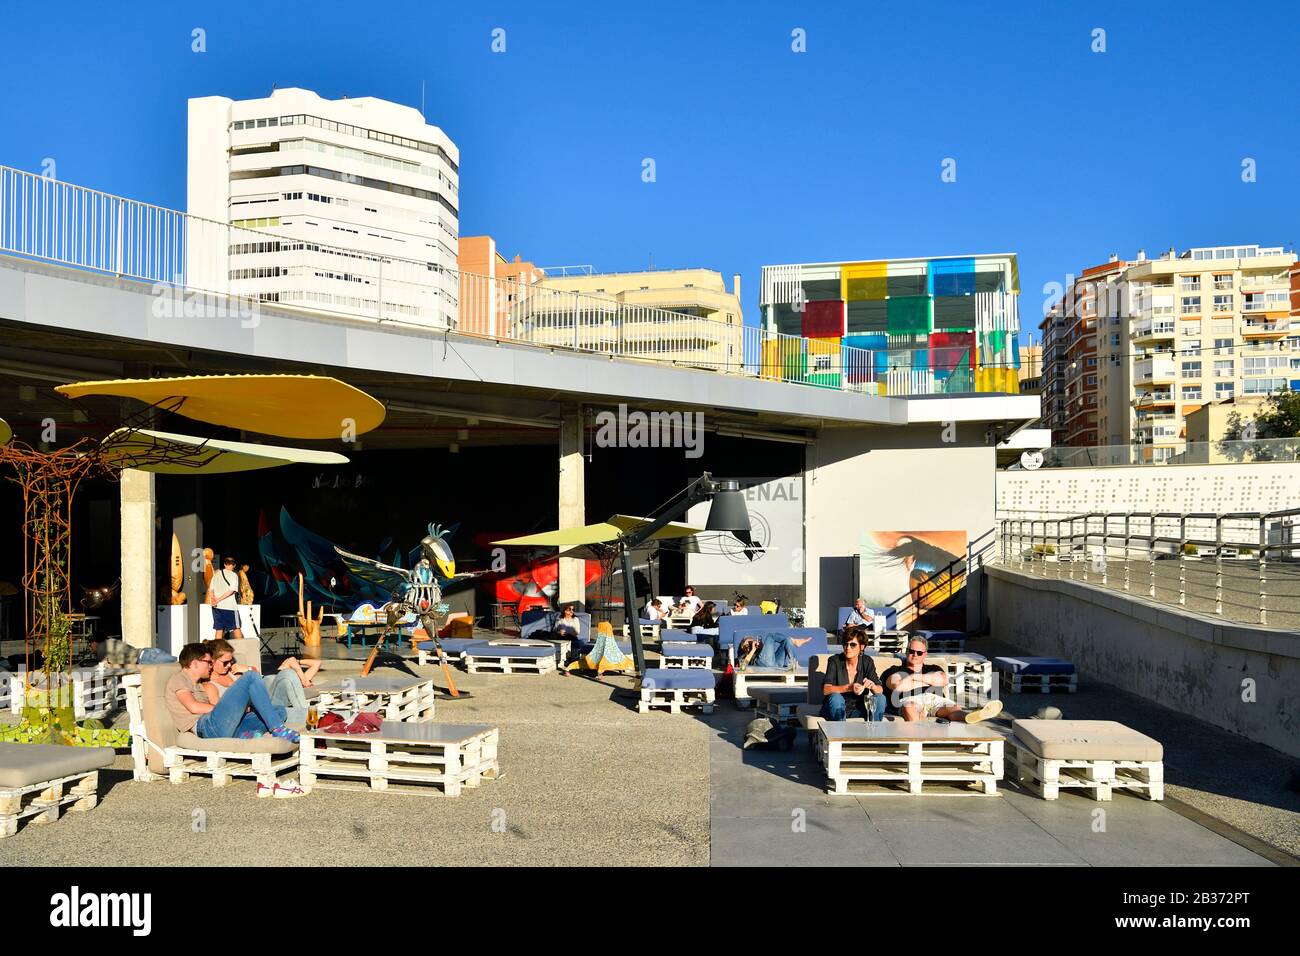 Espagne, Andalousie, Costa del sol, Malaga, le bord de mer sur le port, El Artsenal, bar, galerie d'art et le Centre d'art Pompidou le Cube par Daniel Buren en en arrière-plan Banque D'Images